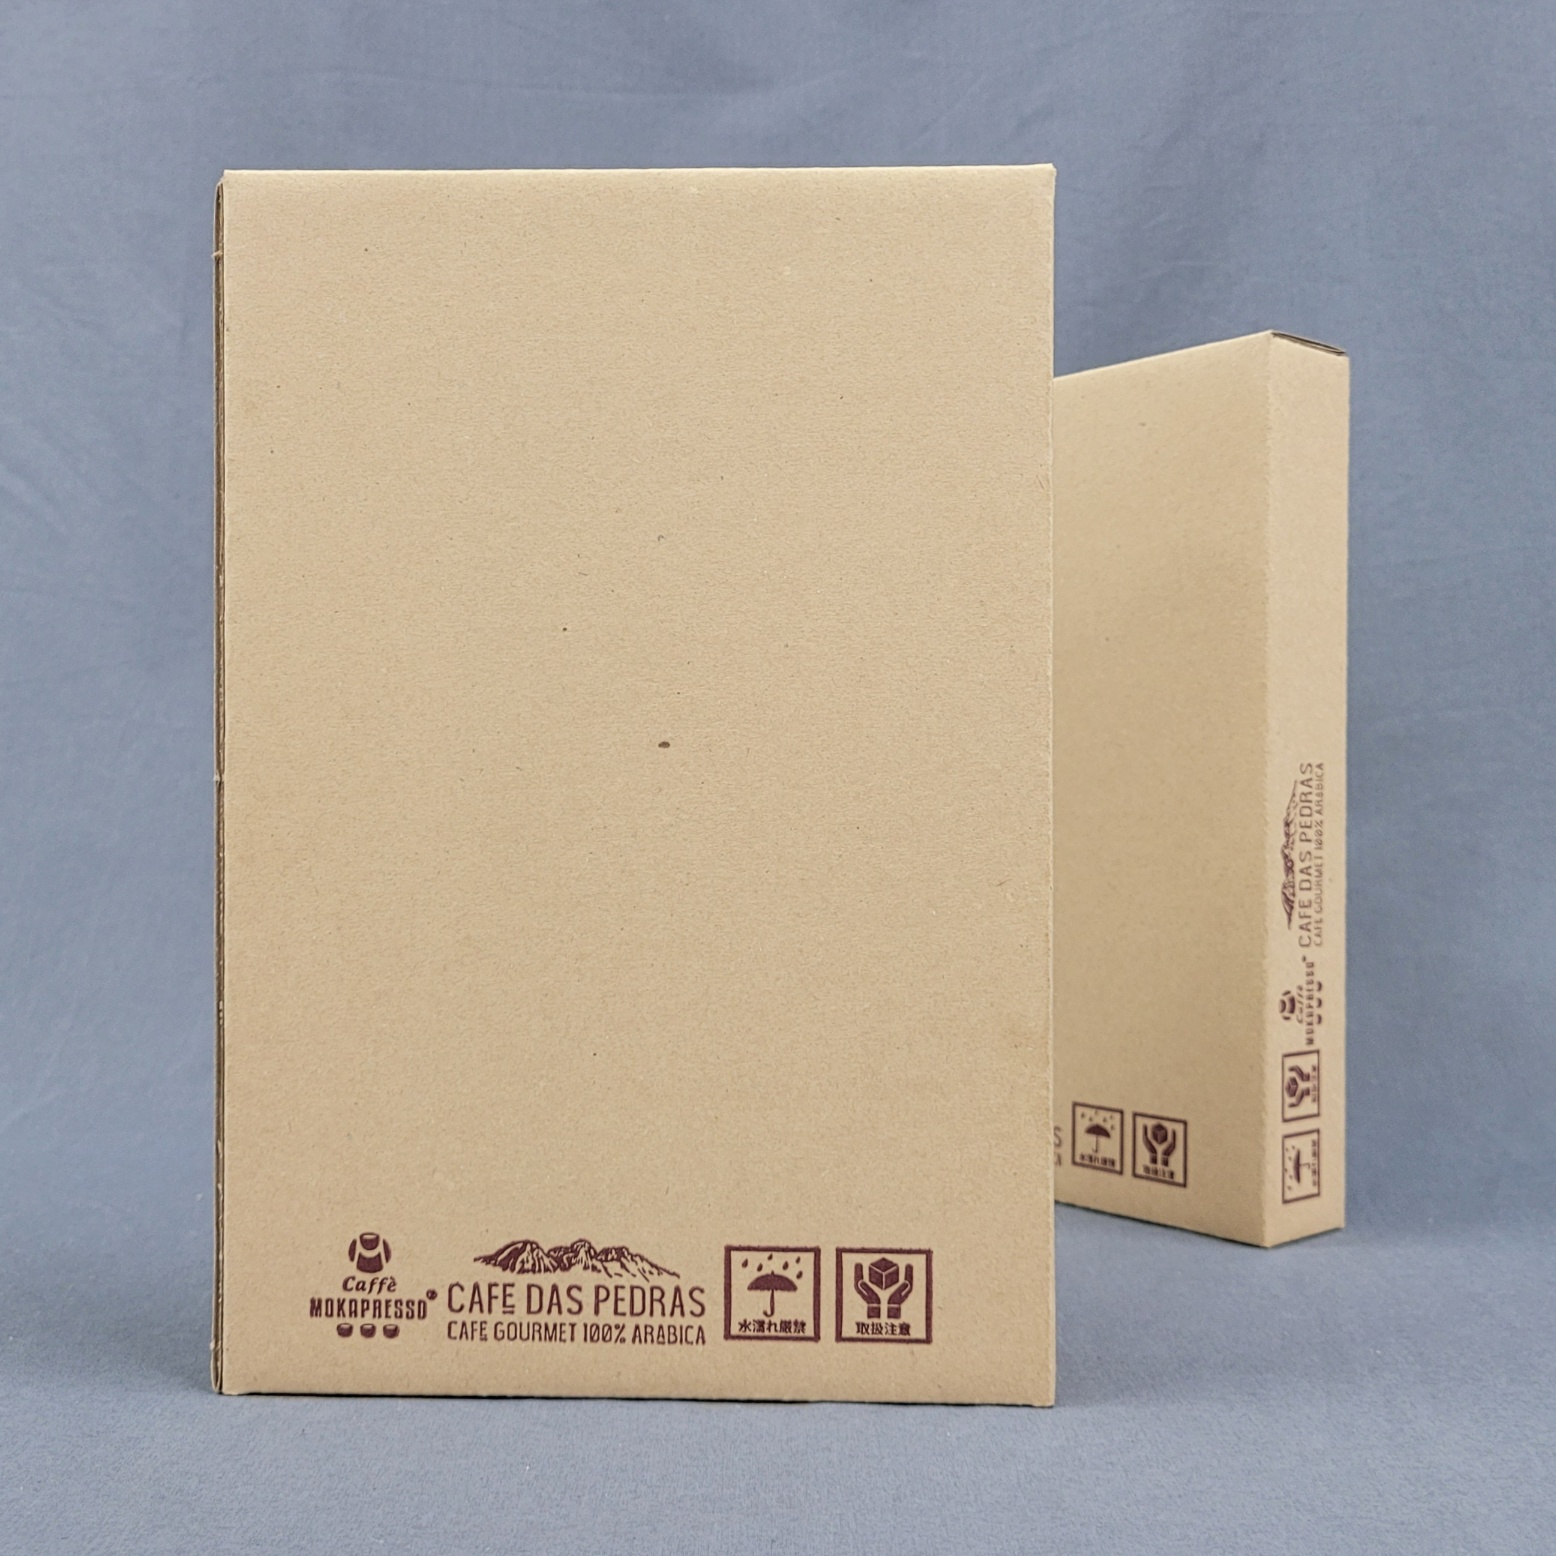 ダンボール箱オーダーメイドの制作事例-商品パッケージ